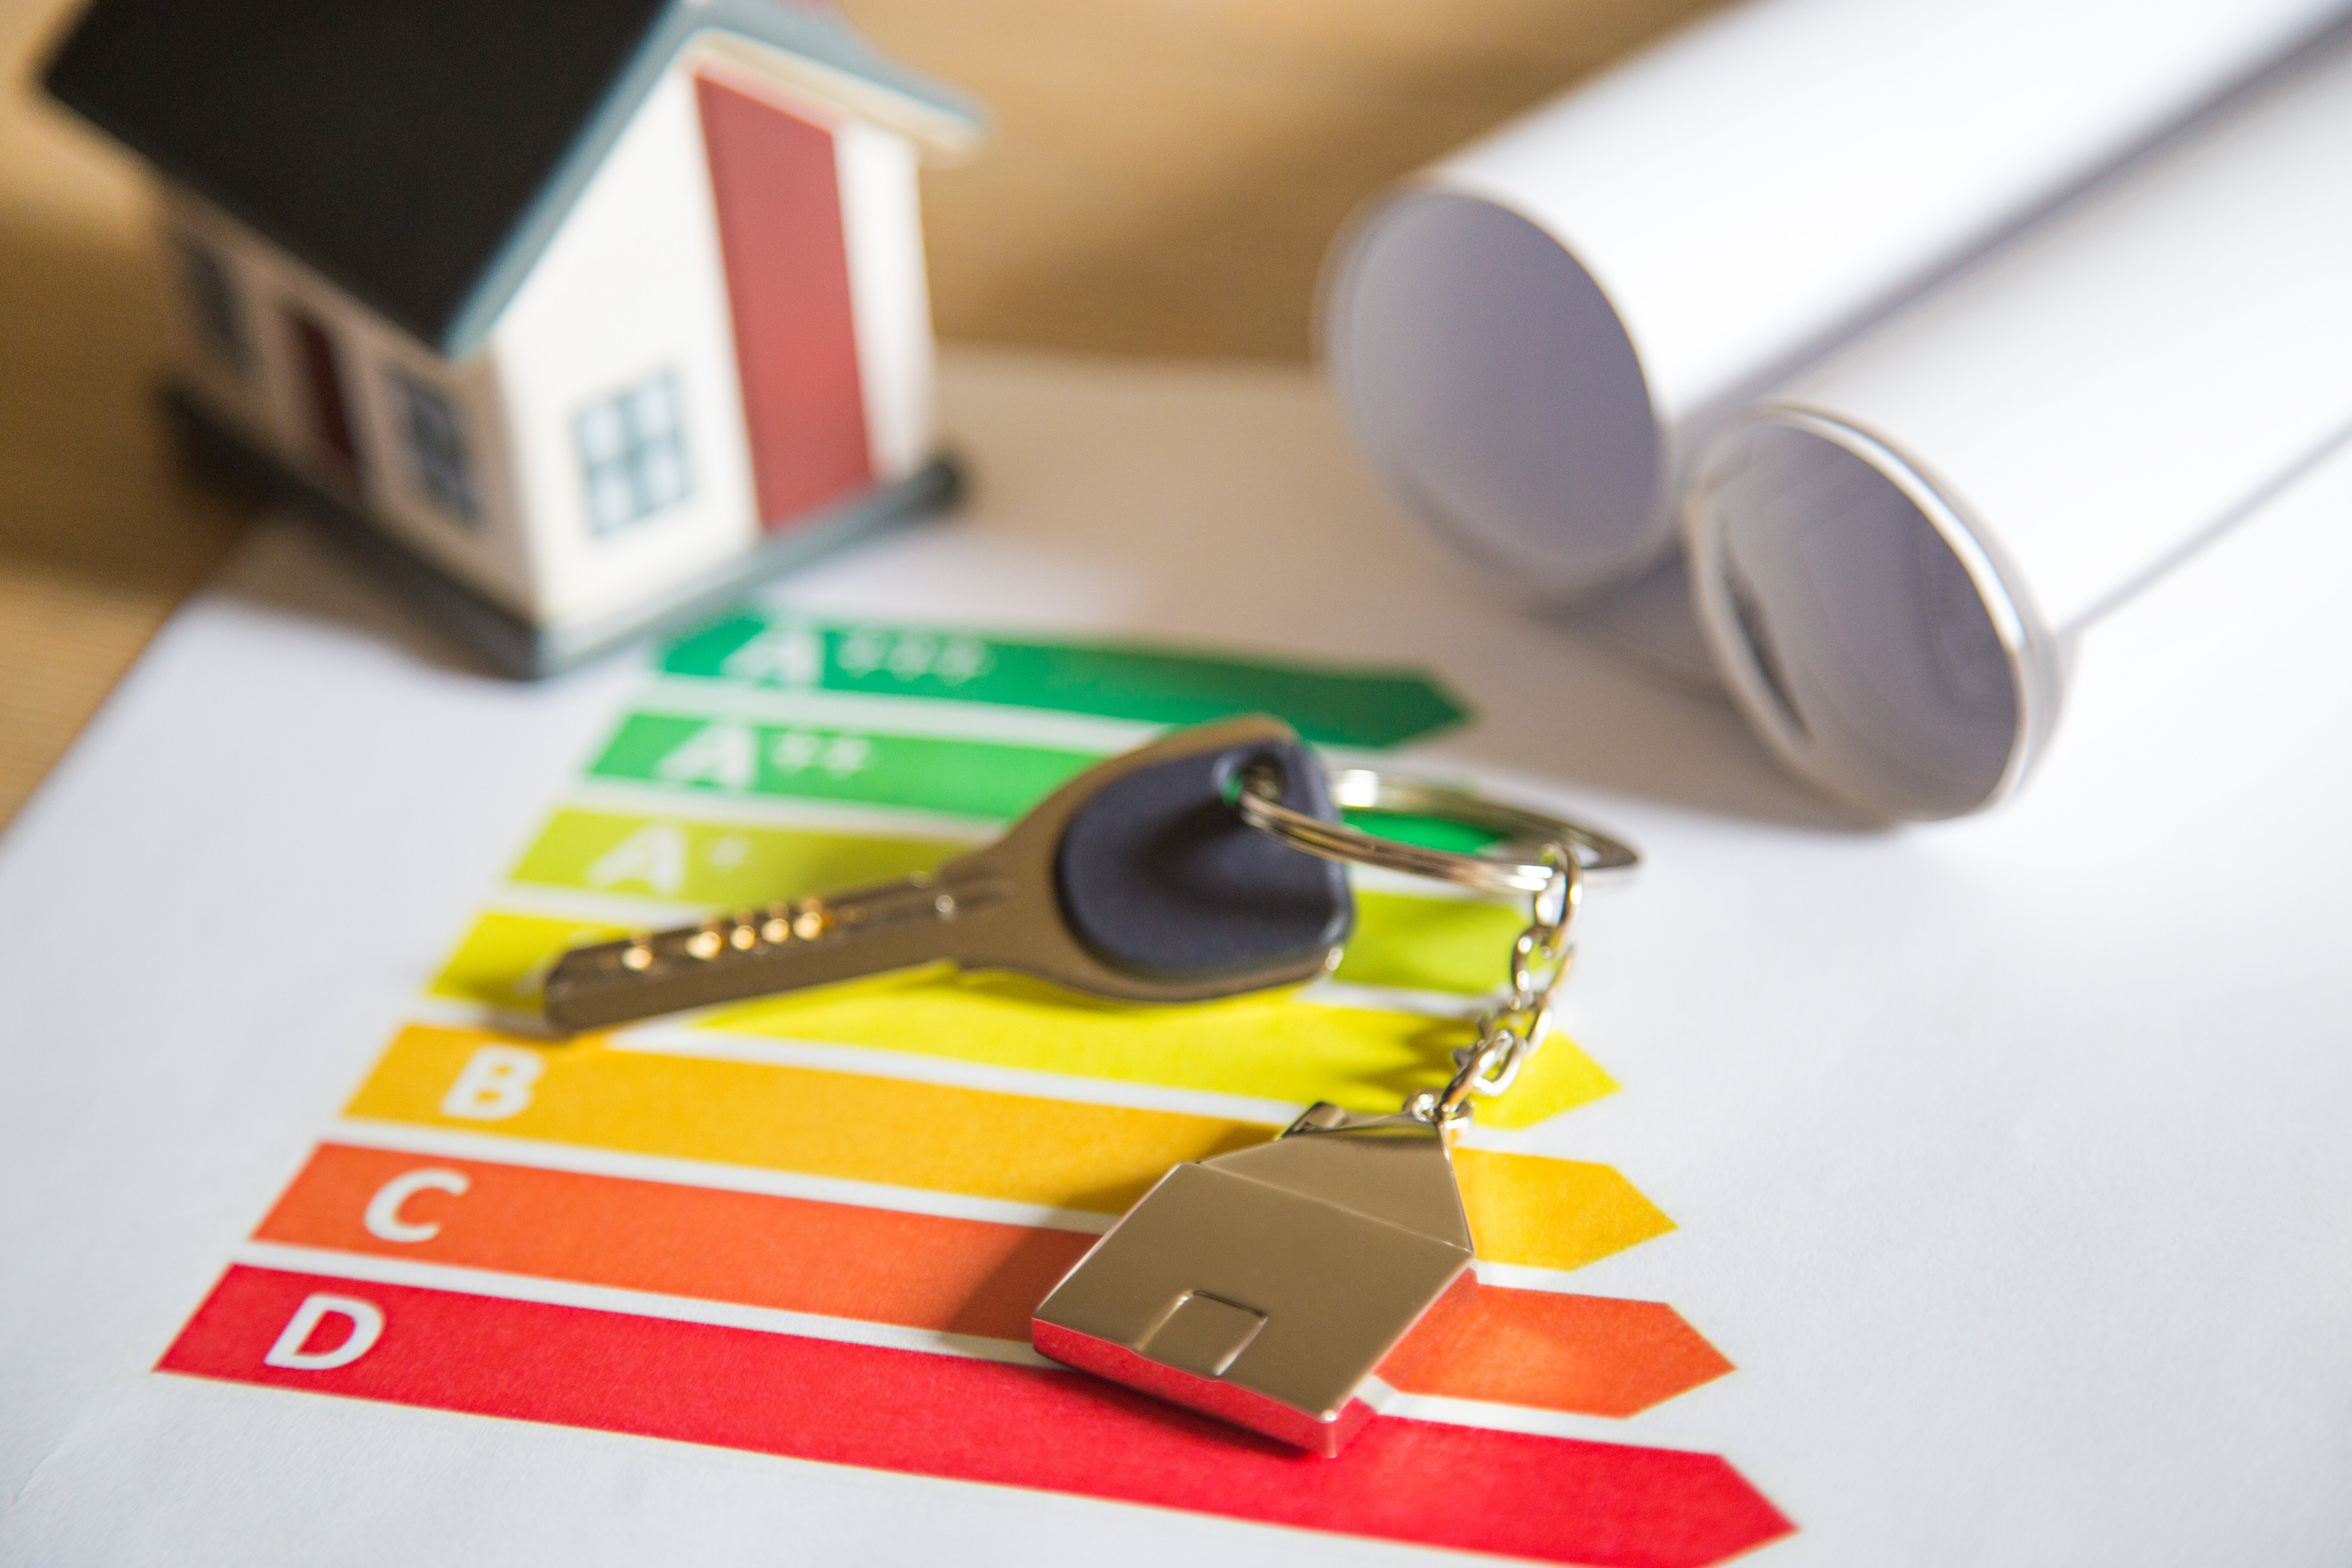 Ενεργειακή αναβάθμιση της κατοικίας σας μέσω του προγράμματος «Εξοικονόμηση κατ’ Οίκον ΙΙ»